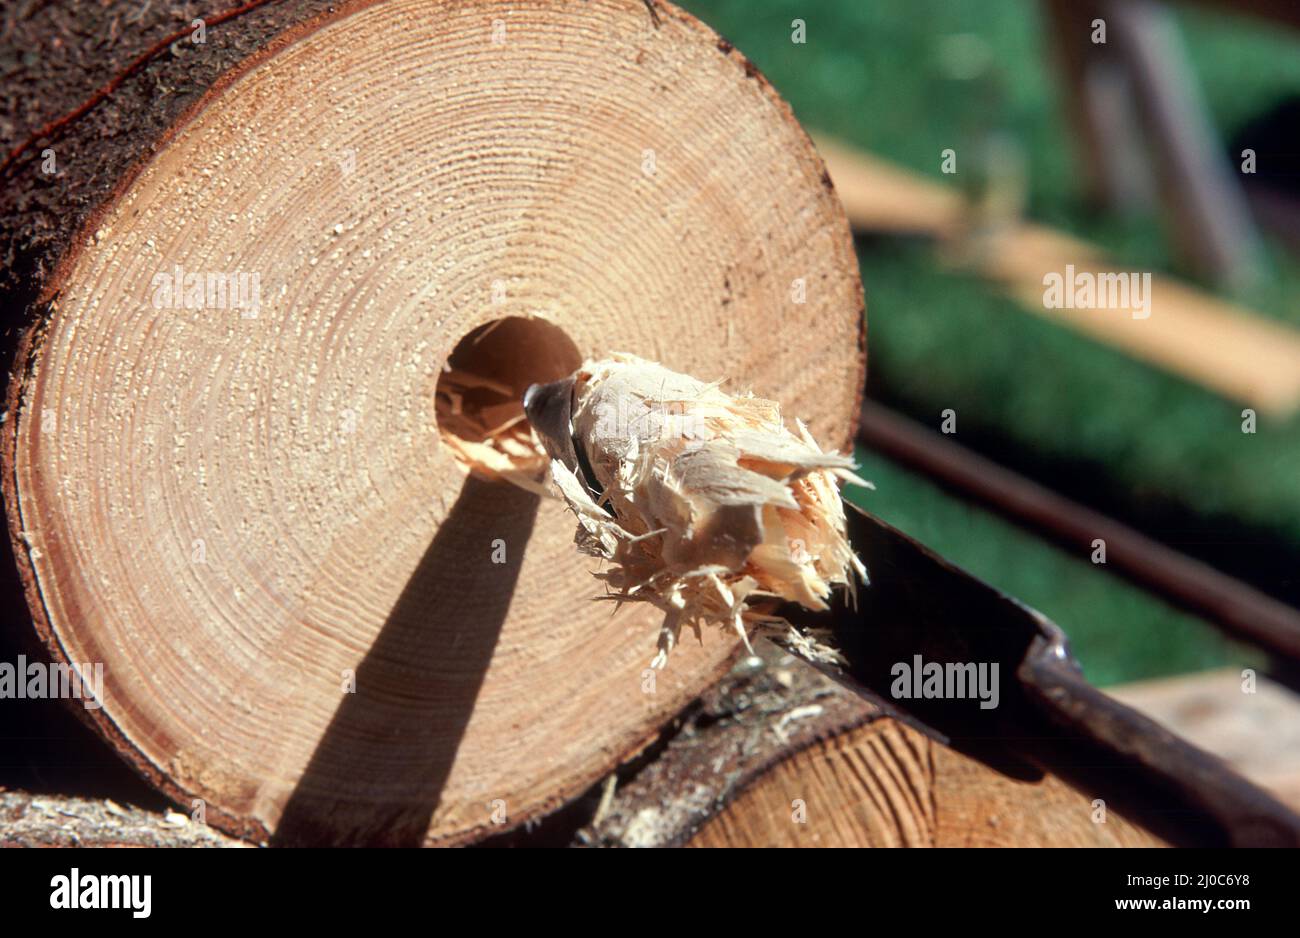 Der Röhrmeister oder Röhrenmeister, ein sehr alter, heute kaum noch ausgeübter Beruf, fertigt aus Holzstämmen Wasserrohre. Dazu benutzt er spezielle W Stock Photo